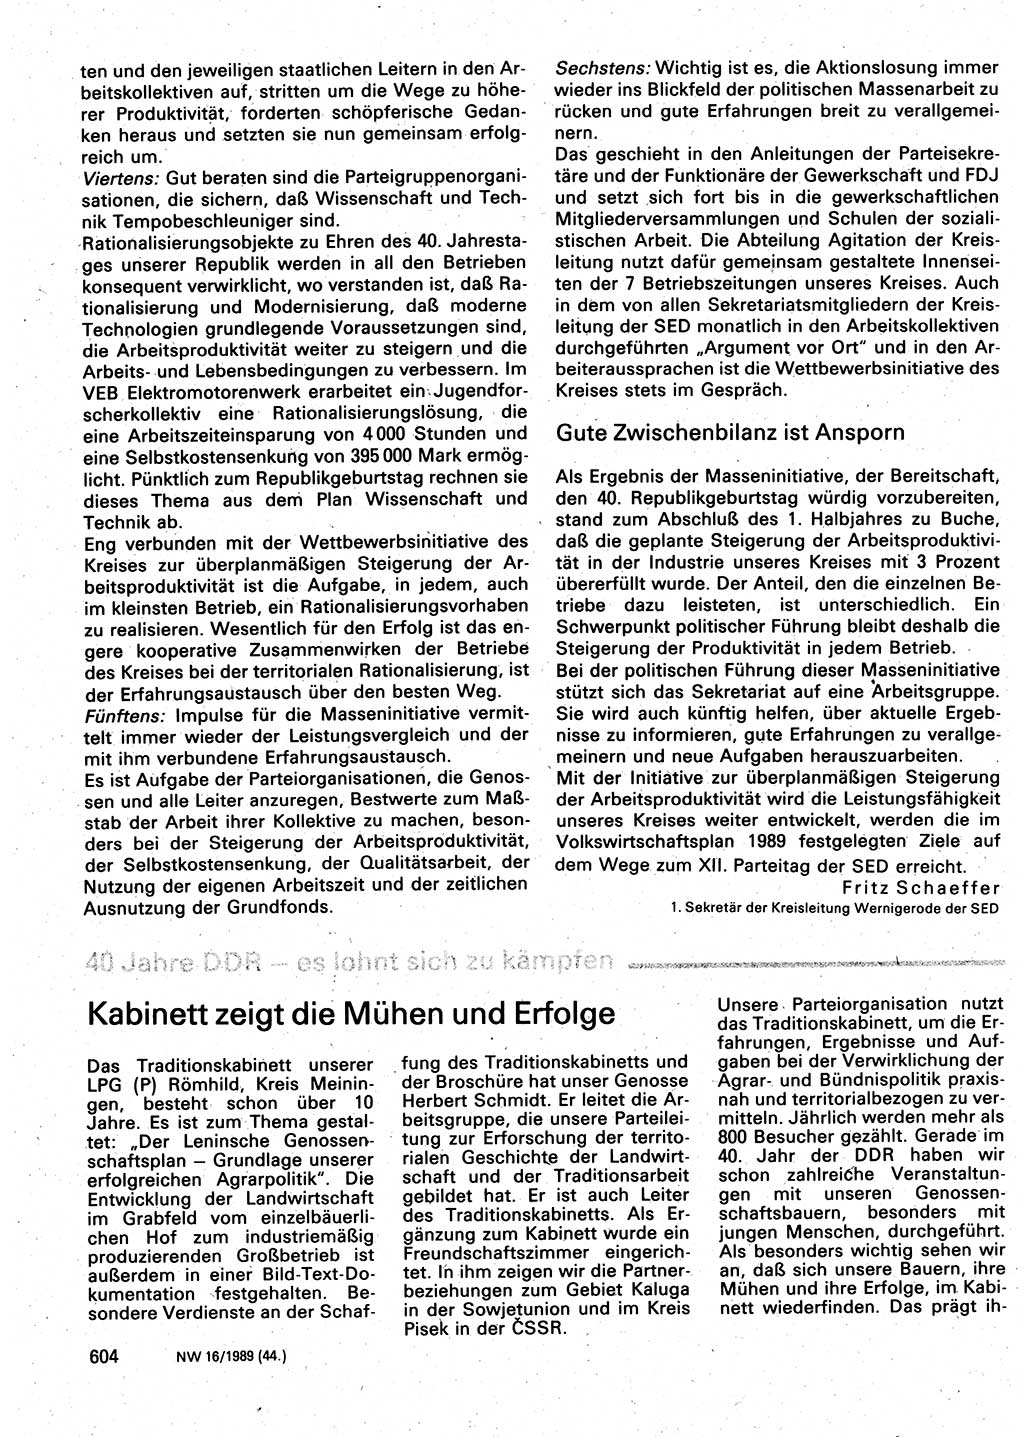 Neuer Weg (NW), Organ des Zentralkomitees (ZK) der SED (Sozialistische Einheitspartei Deutschlands) für Fragen des Parteilebens, 44. Jahrgang [Deutsche Demokratische Republik (DDR)] 1989, Seite 604 (NW ZK SED DDR 1989, S. 604)